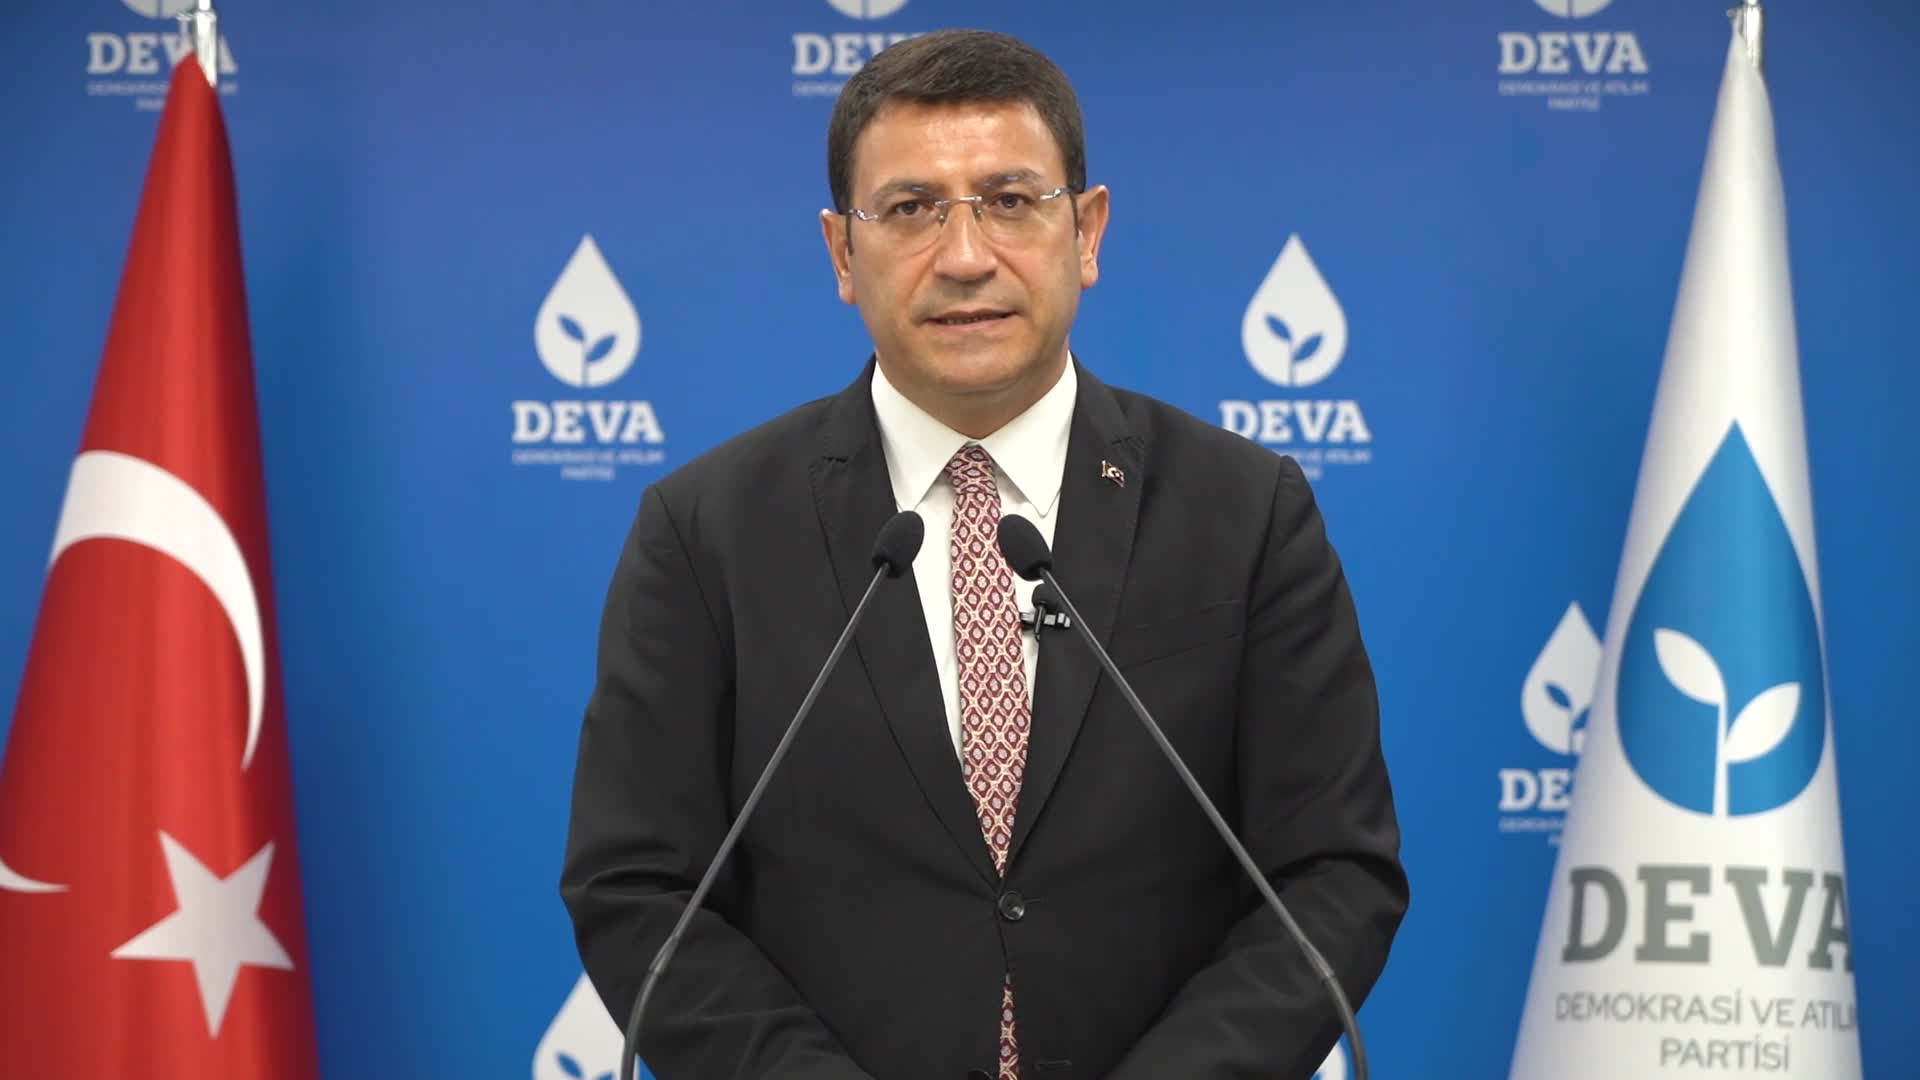 DEVA Partisi Sözcüsü: Göçmen meselesi seçim kampanyasına meze edilemez